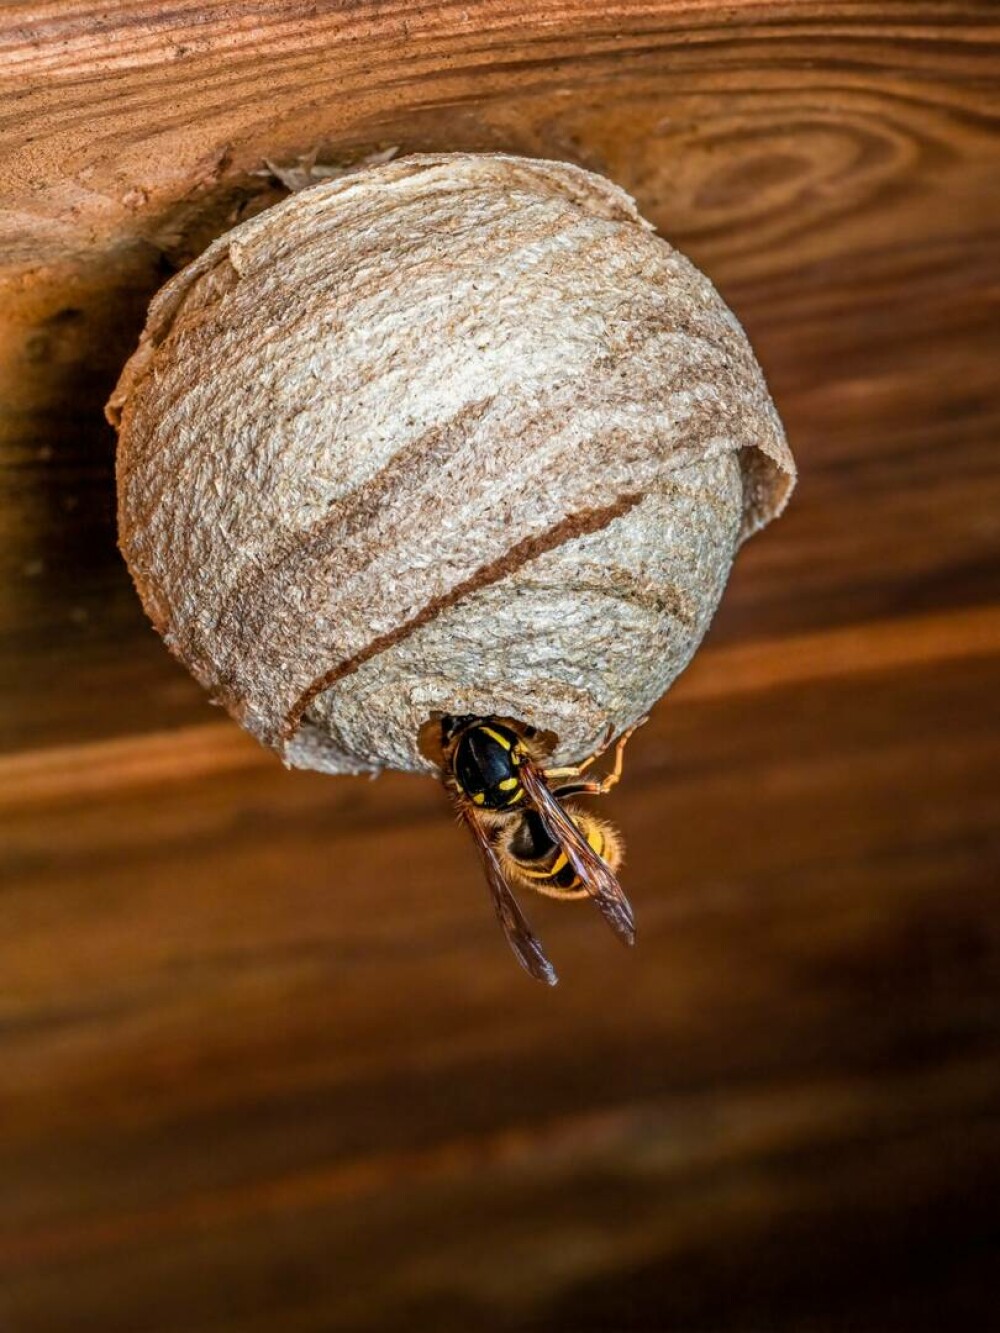 Imagini rare. Cum arată interiorul unui cuib de viespi. Un fotograf a surprins și Regina. GALERIE FOTO - Imaginea 3